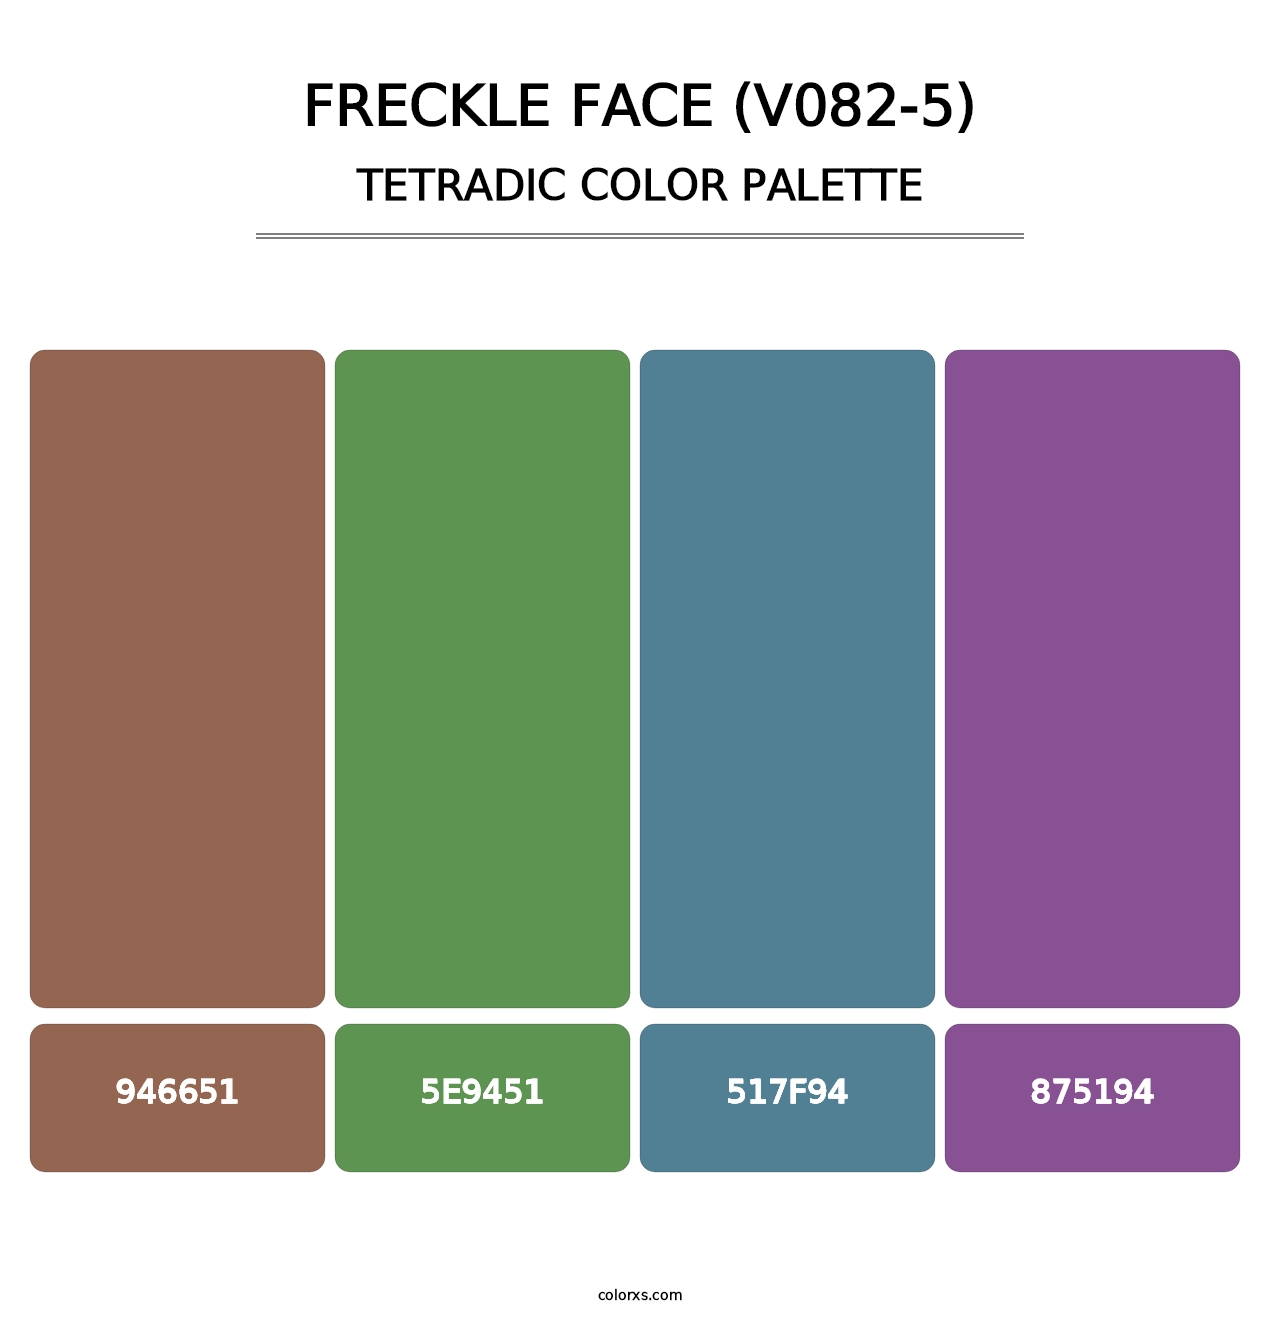 Freckle Face (V082-5) - Tetradic Color Palette